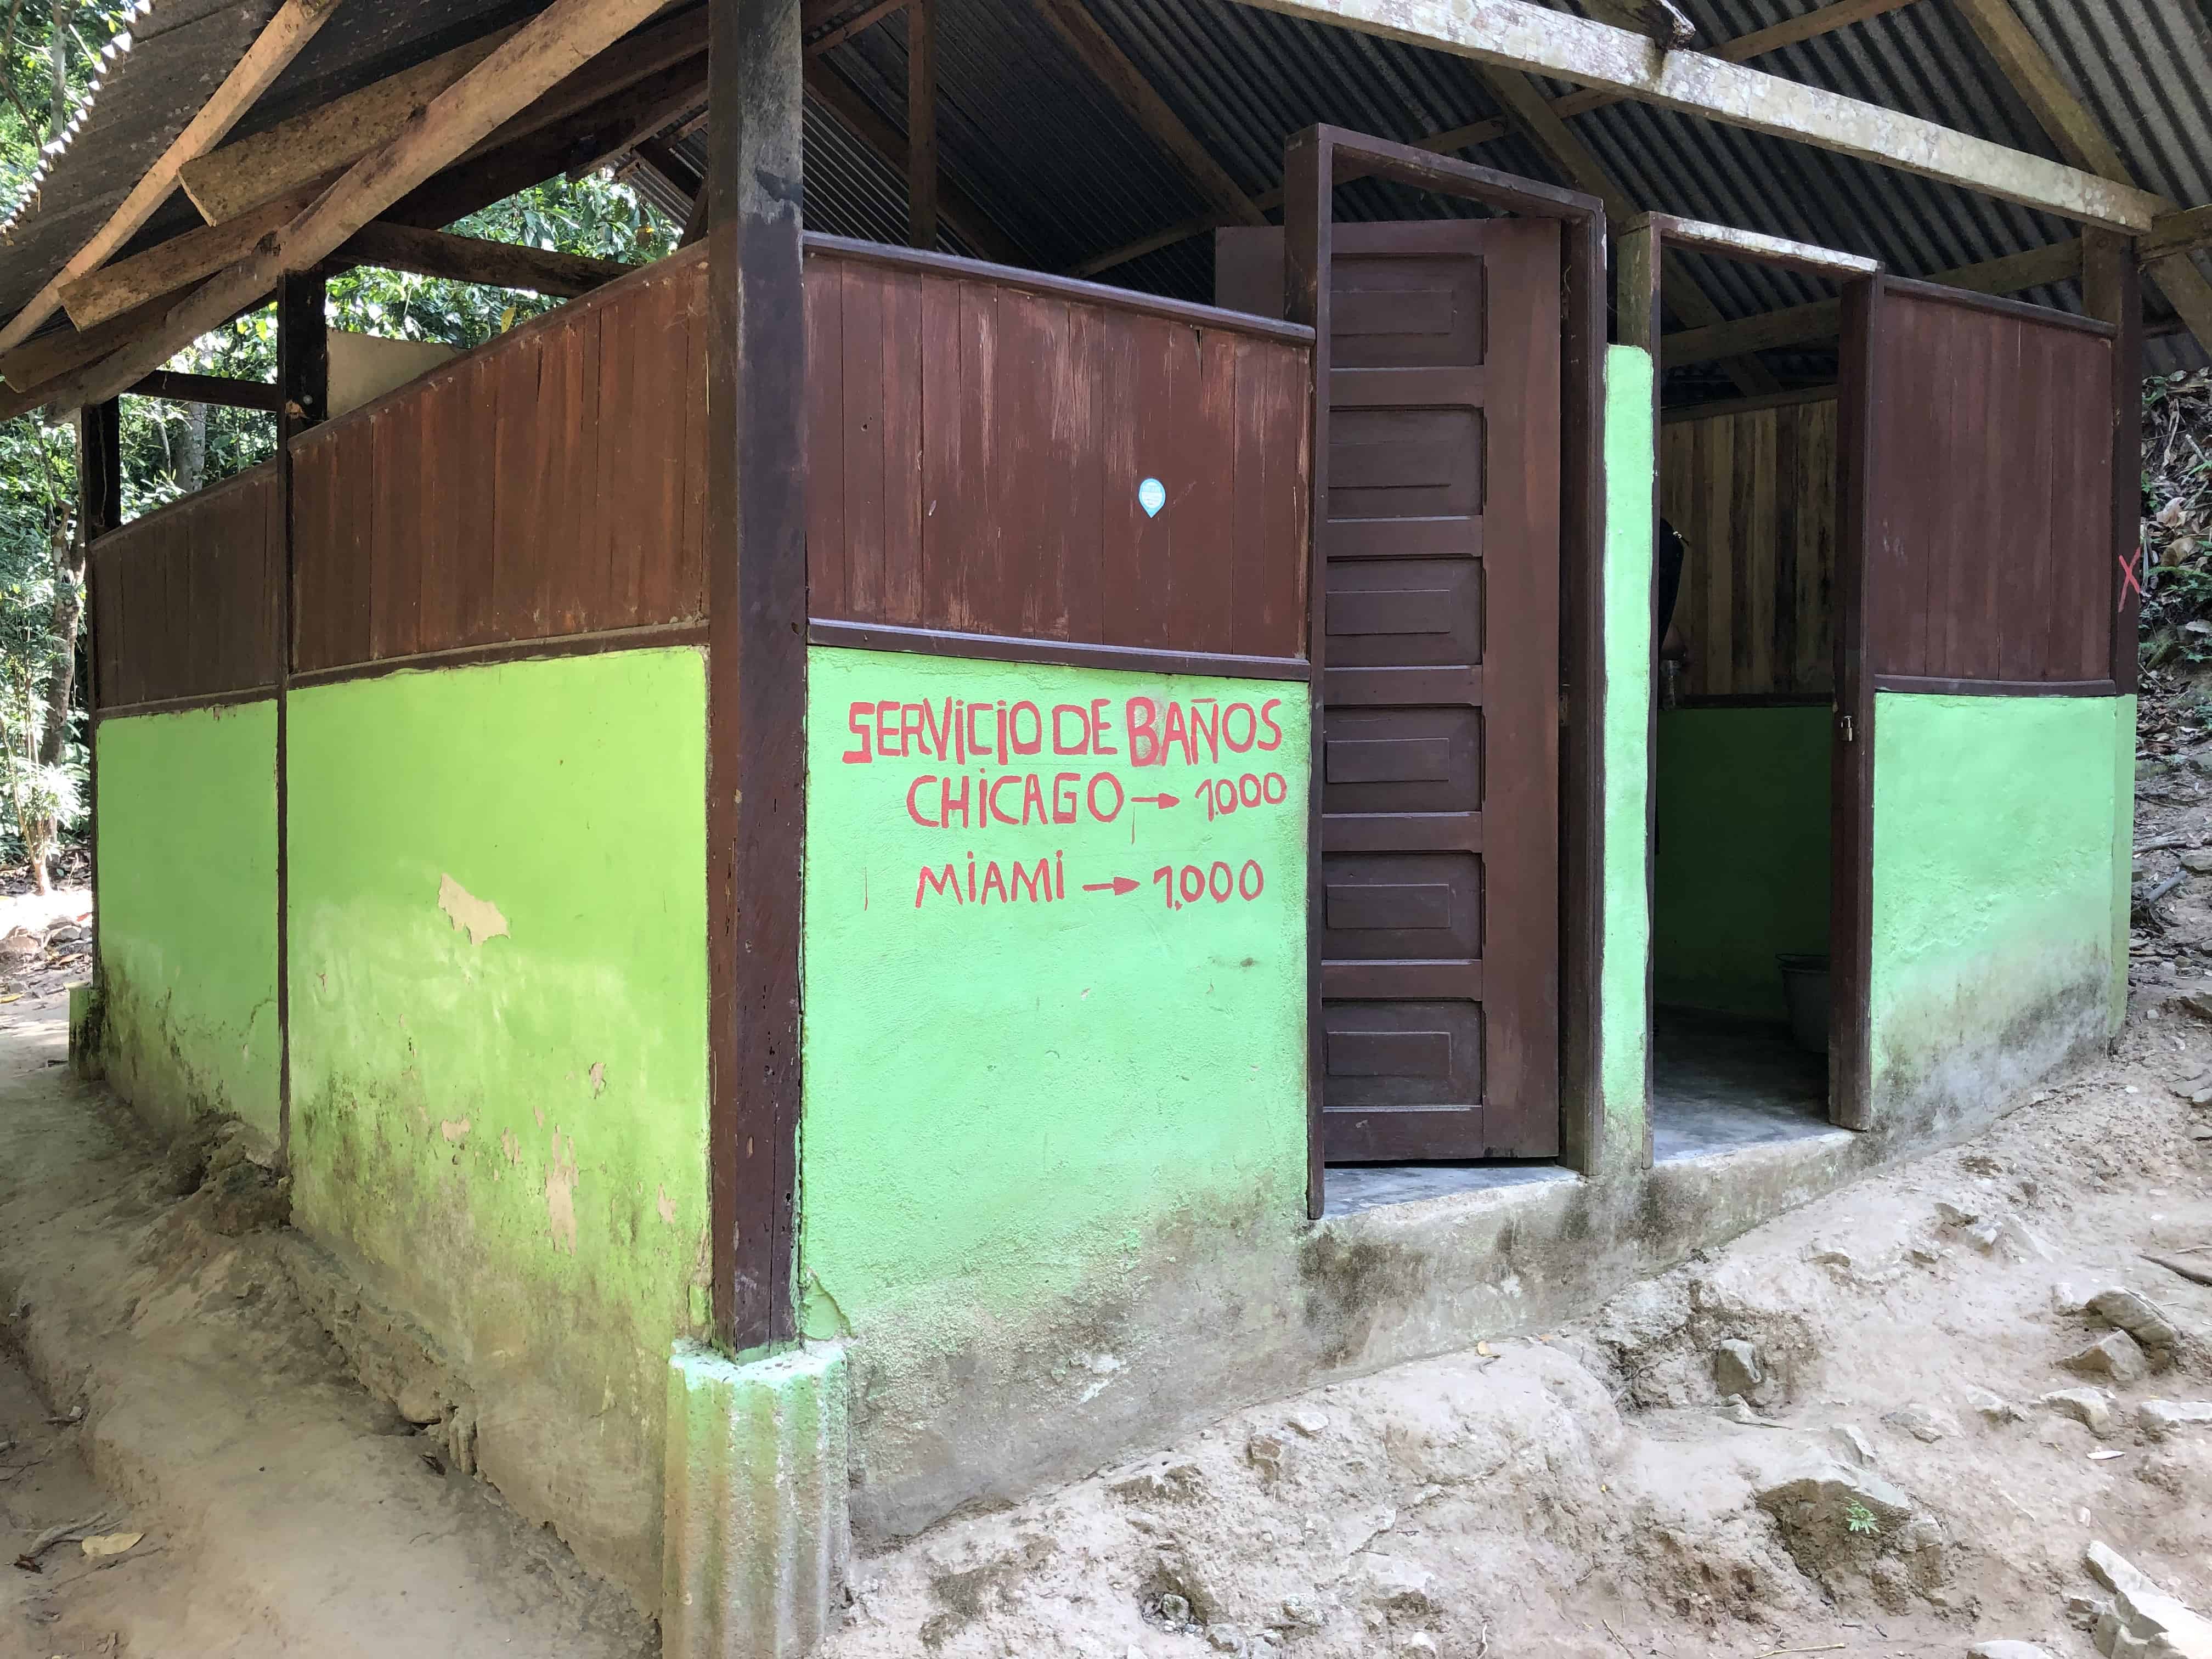 Bathrooms at Quebrada Valencia, Magdalena, Colombia